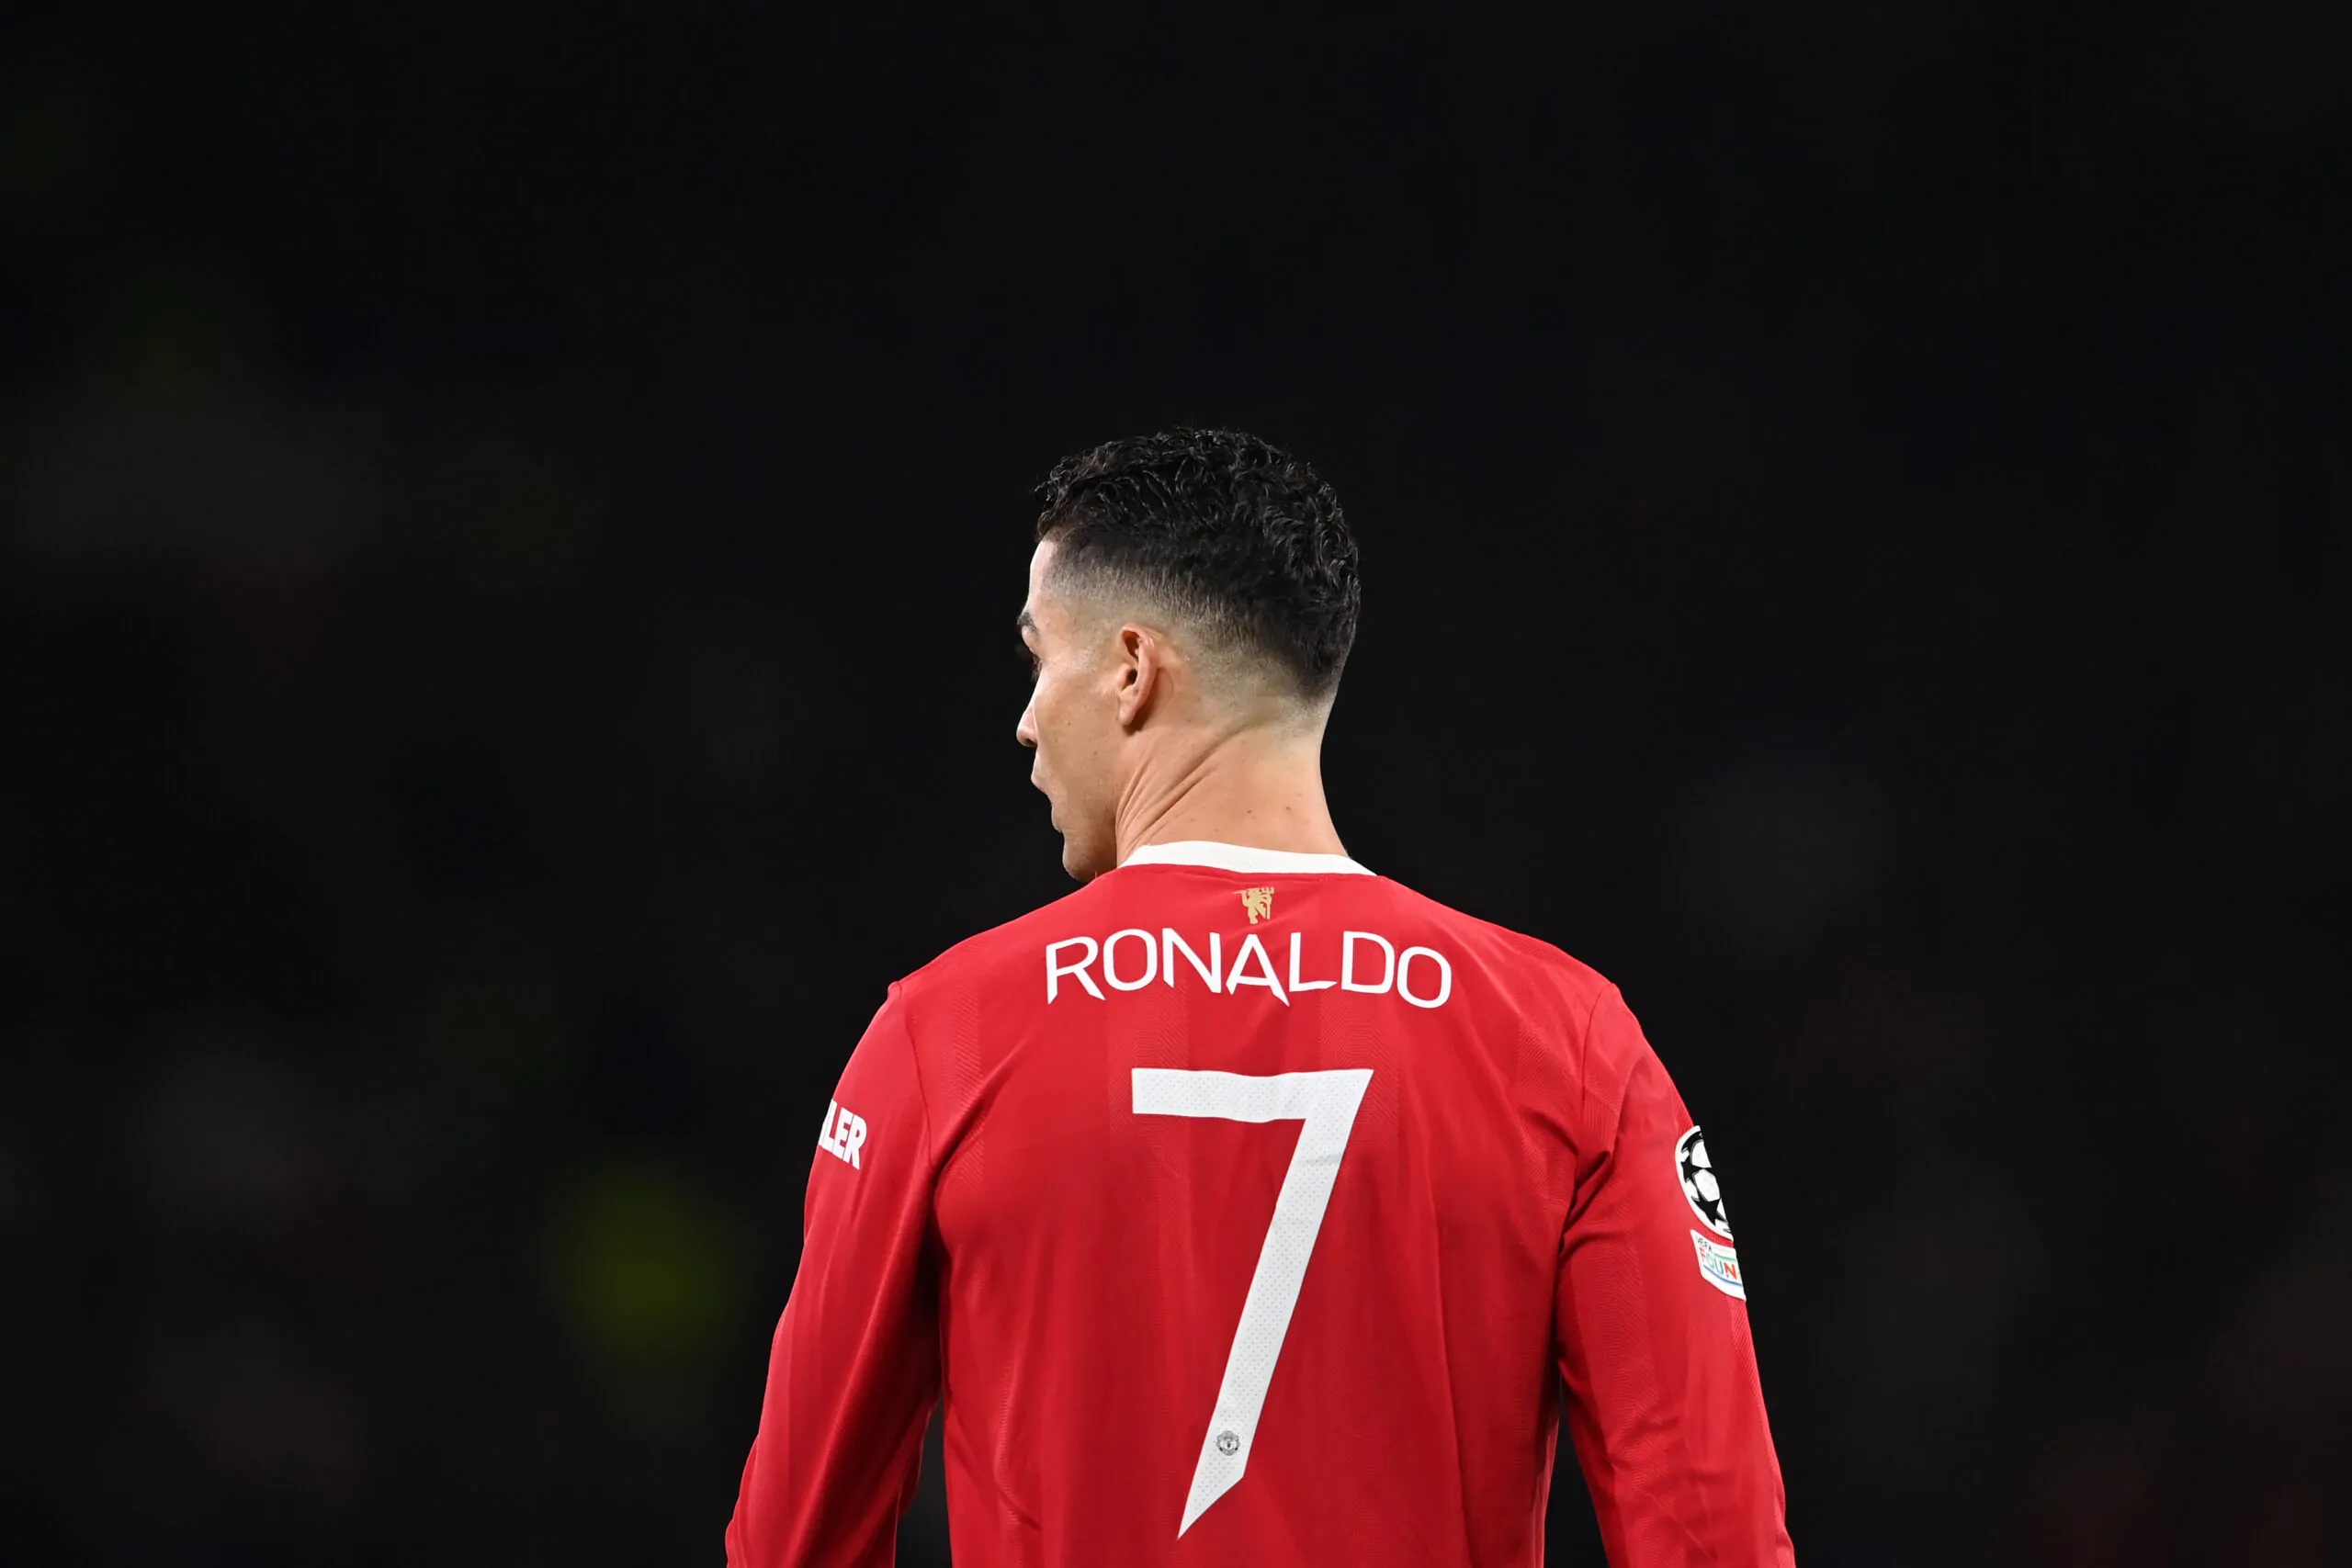 Lutto per Ronaldo, niente sfida col Liverpool: la commovente iniziativa dei tifosi del Manchester